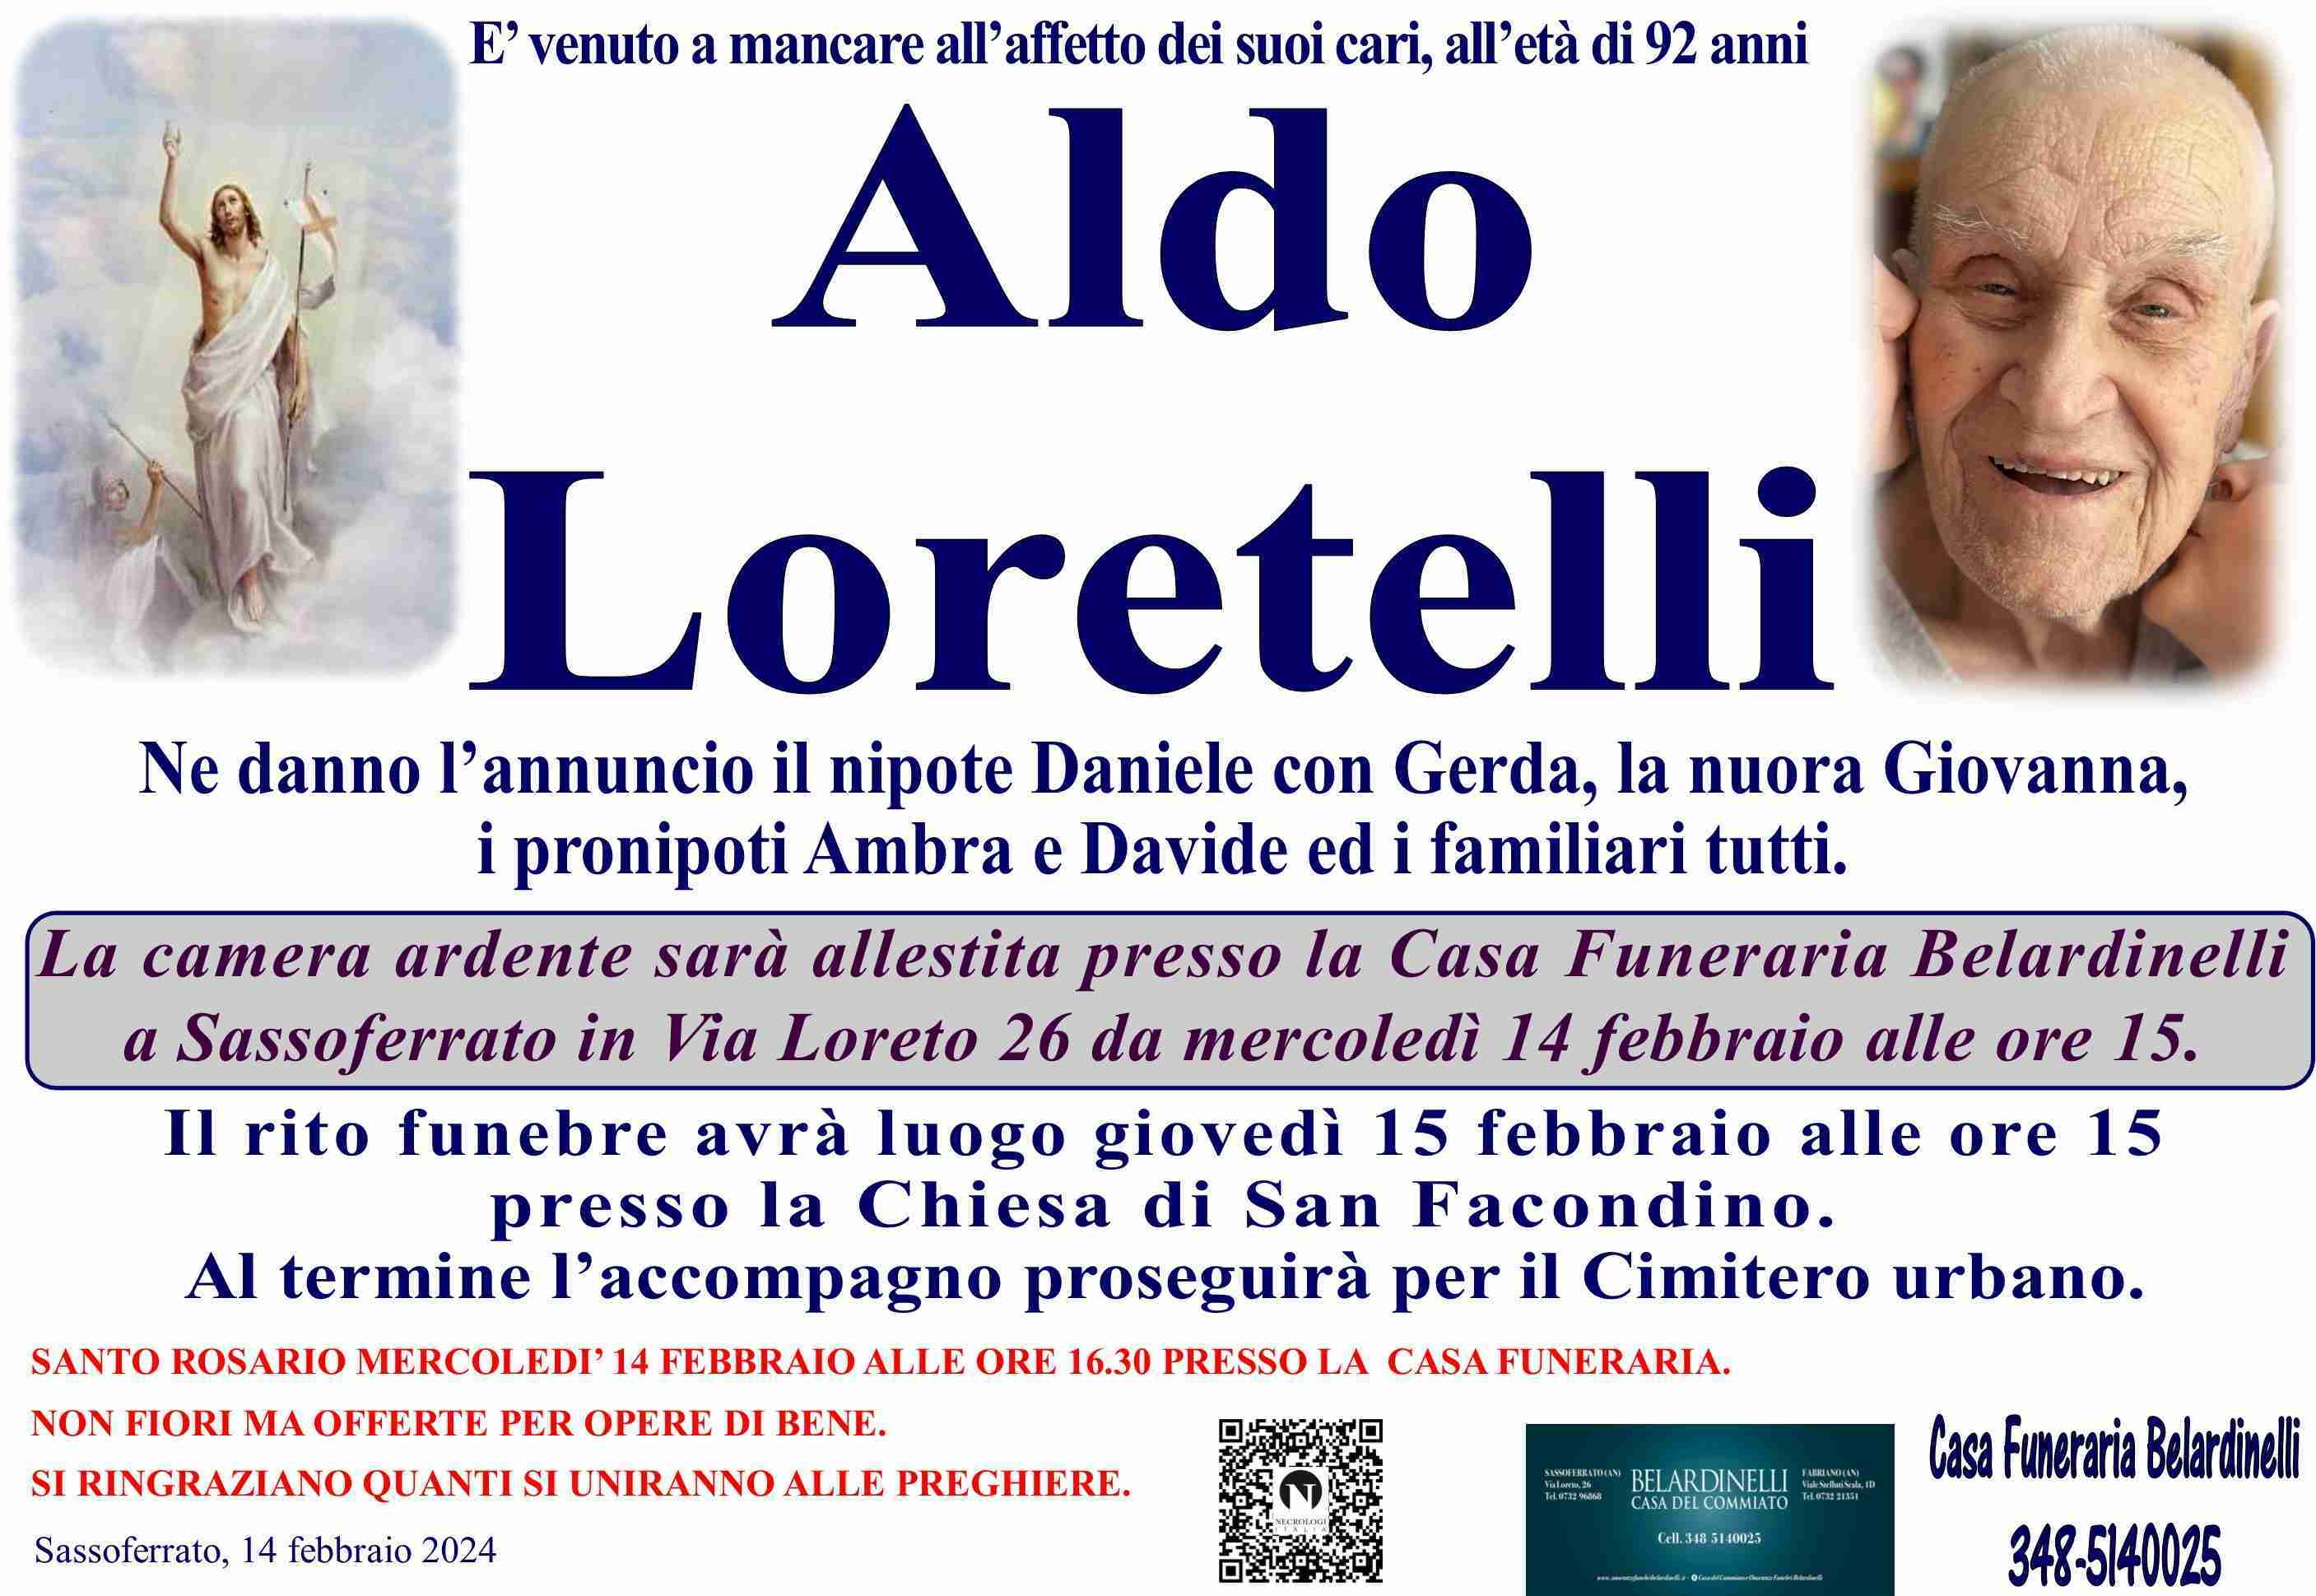 Aldo Loretelli